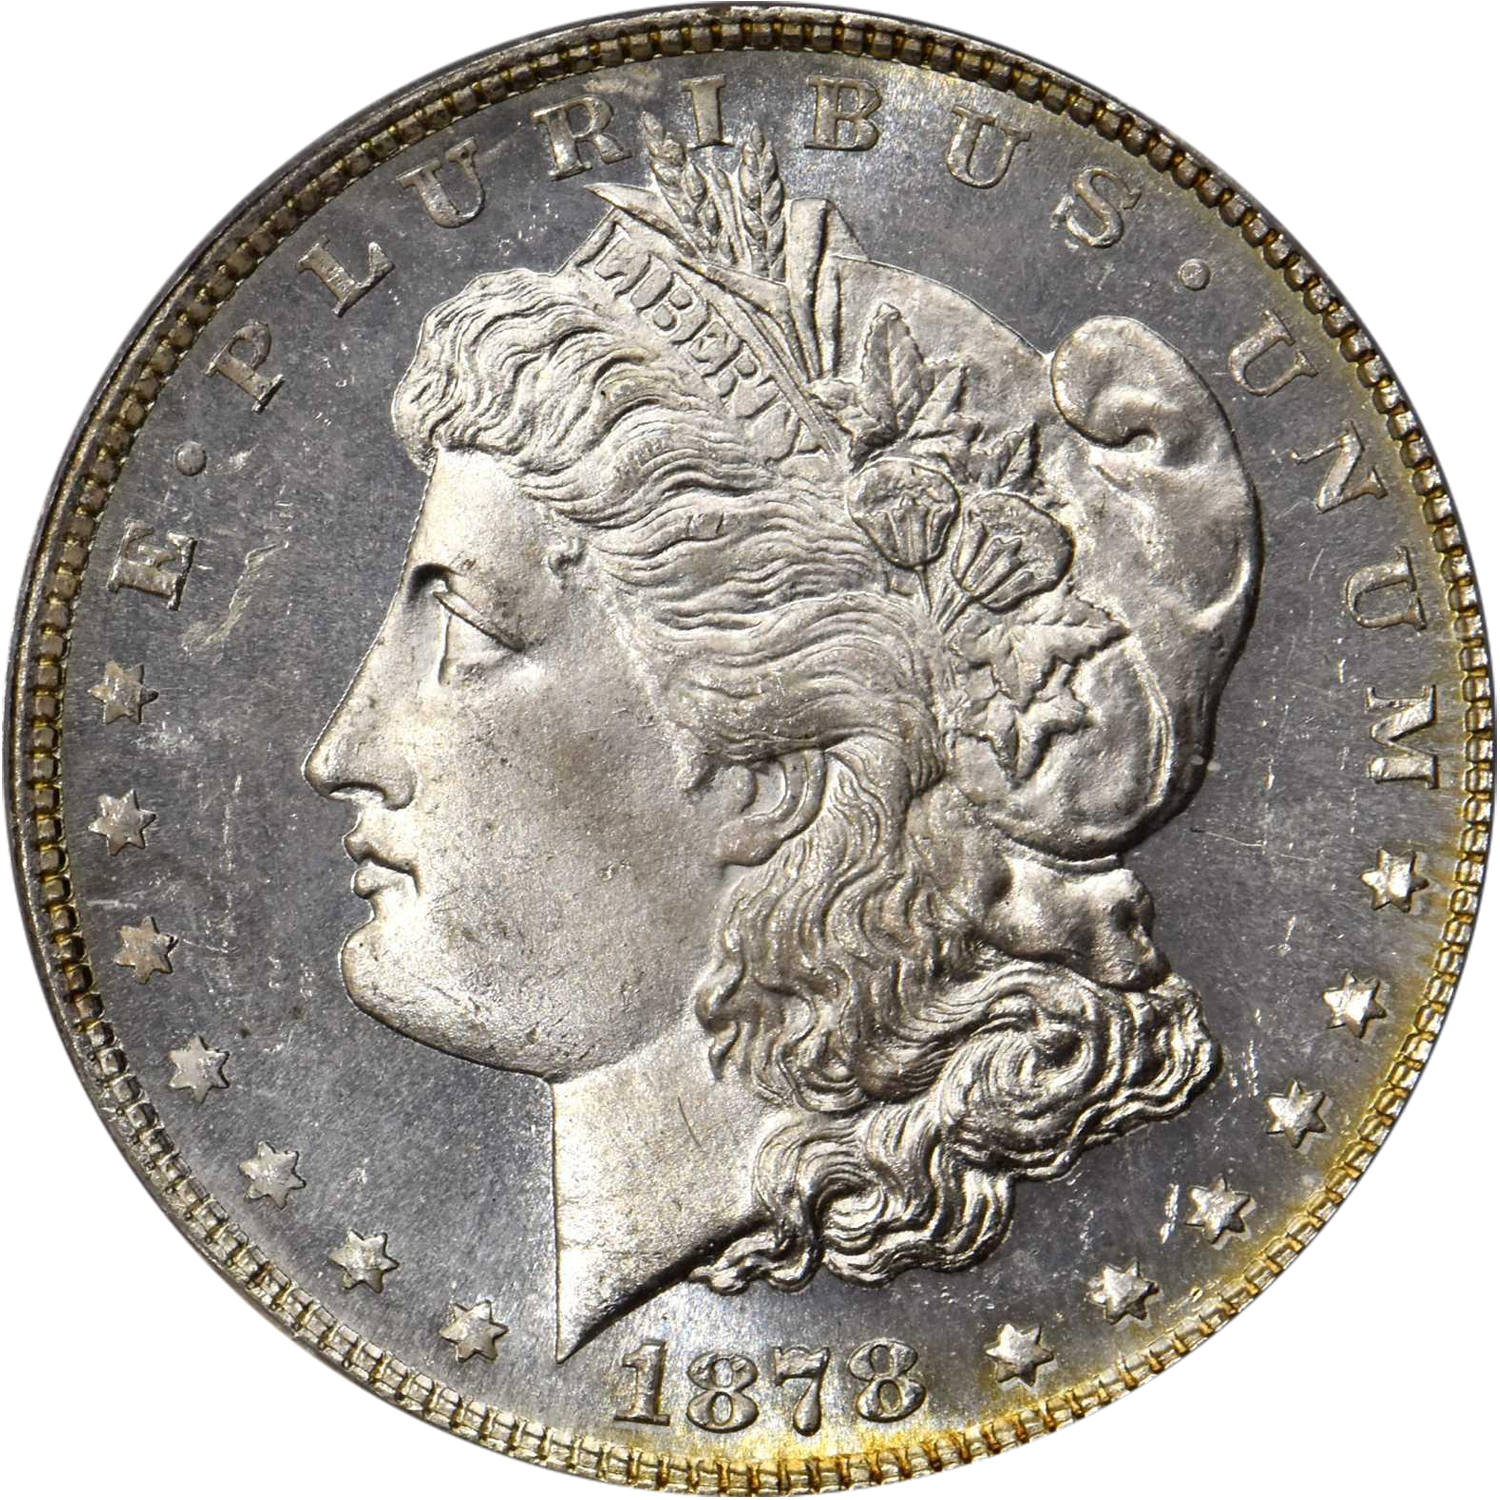 1878 7 tf reverse of 1879 morgan silver dollar